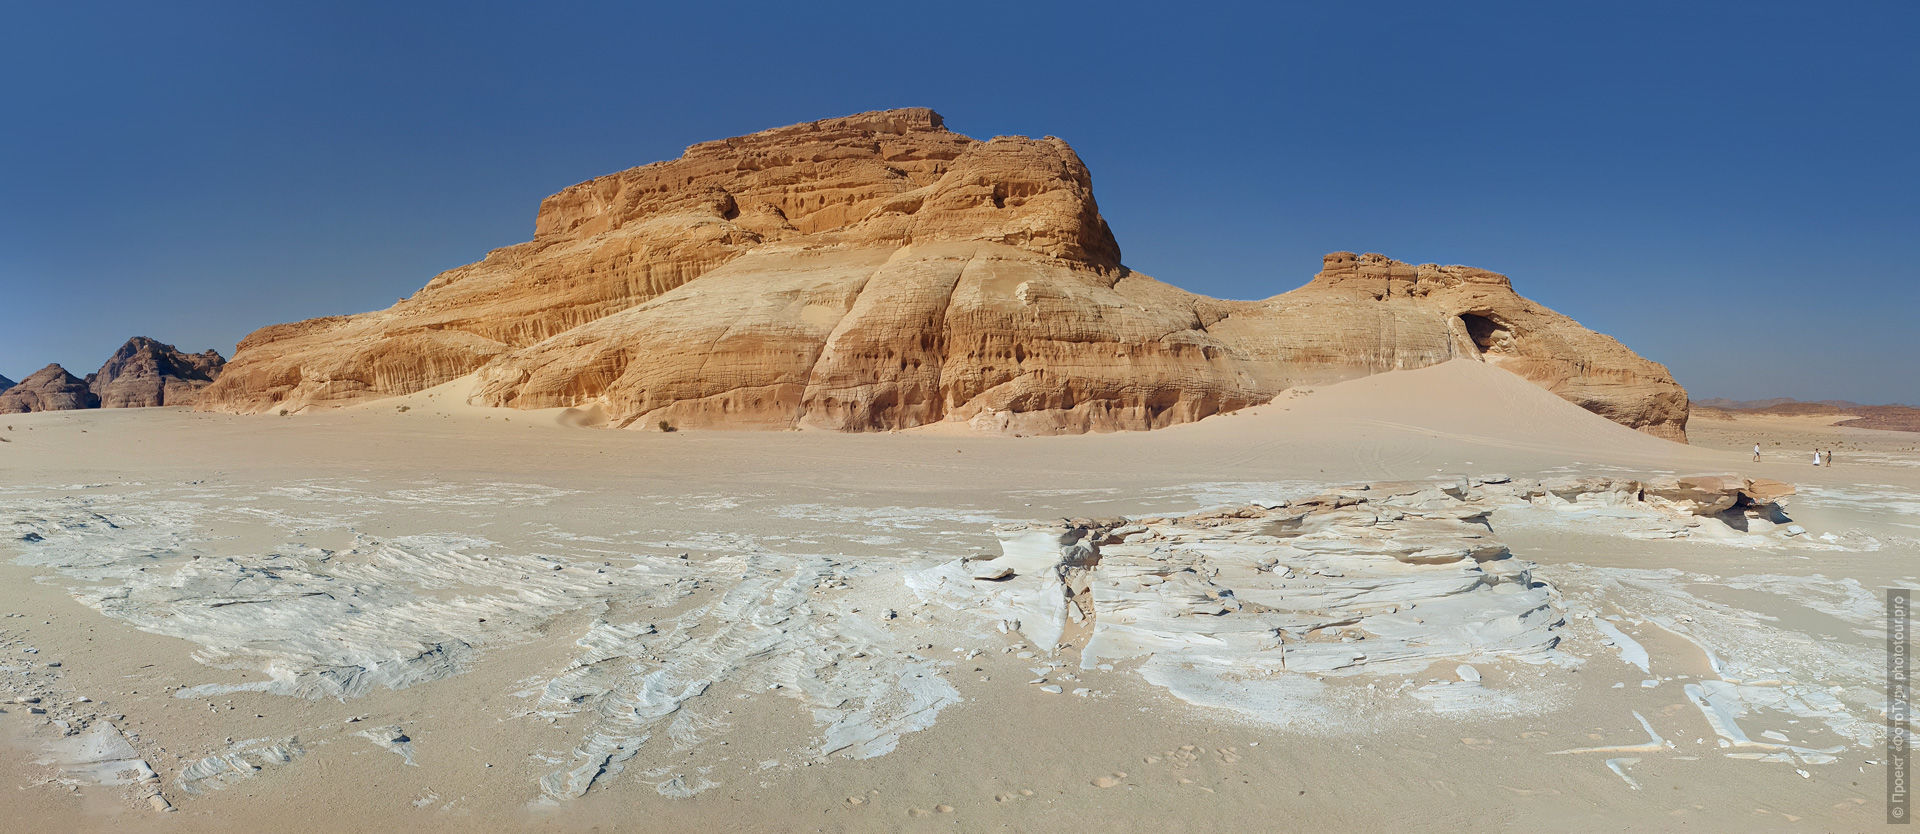 Гора Дракон в Синайской Пустыне. Приключенческий рекламный тур из Дахаба по Синаю, Египет, 8 - 15 апреля 2023 года.